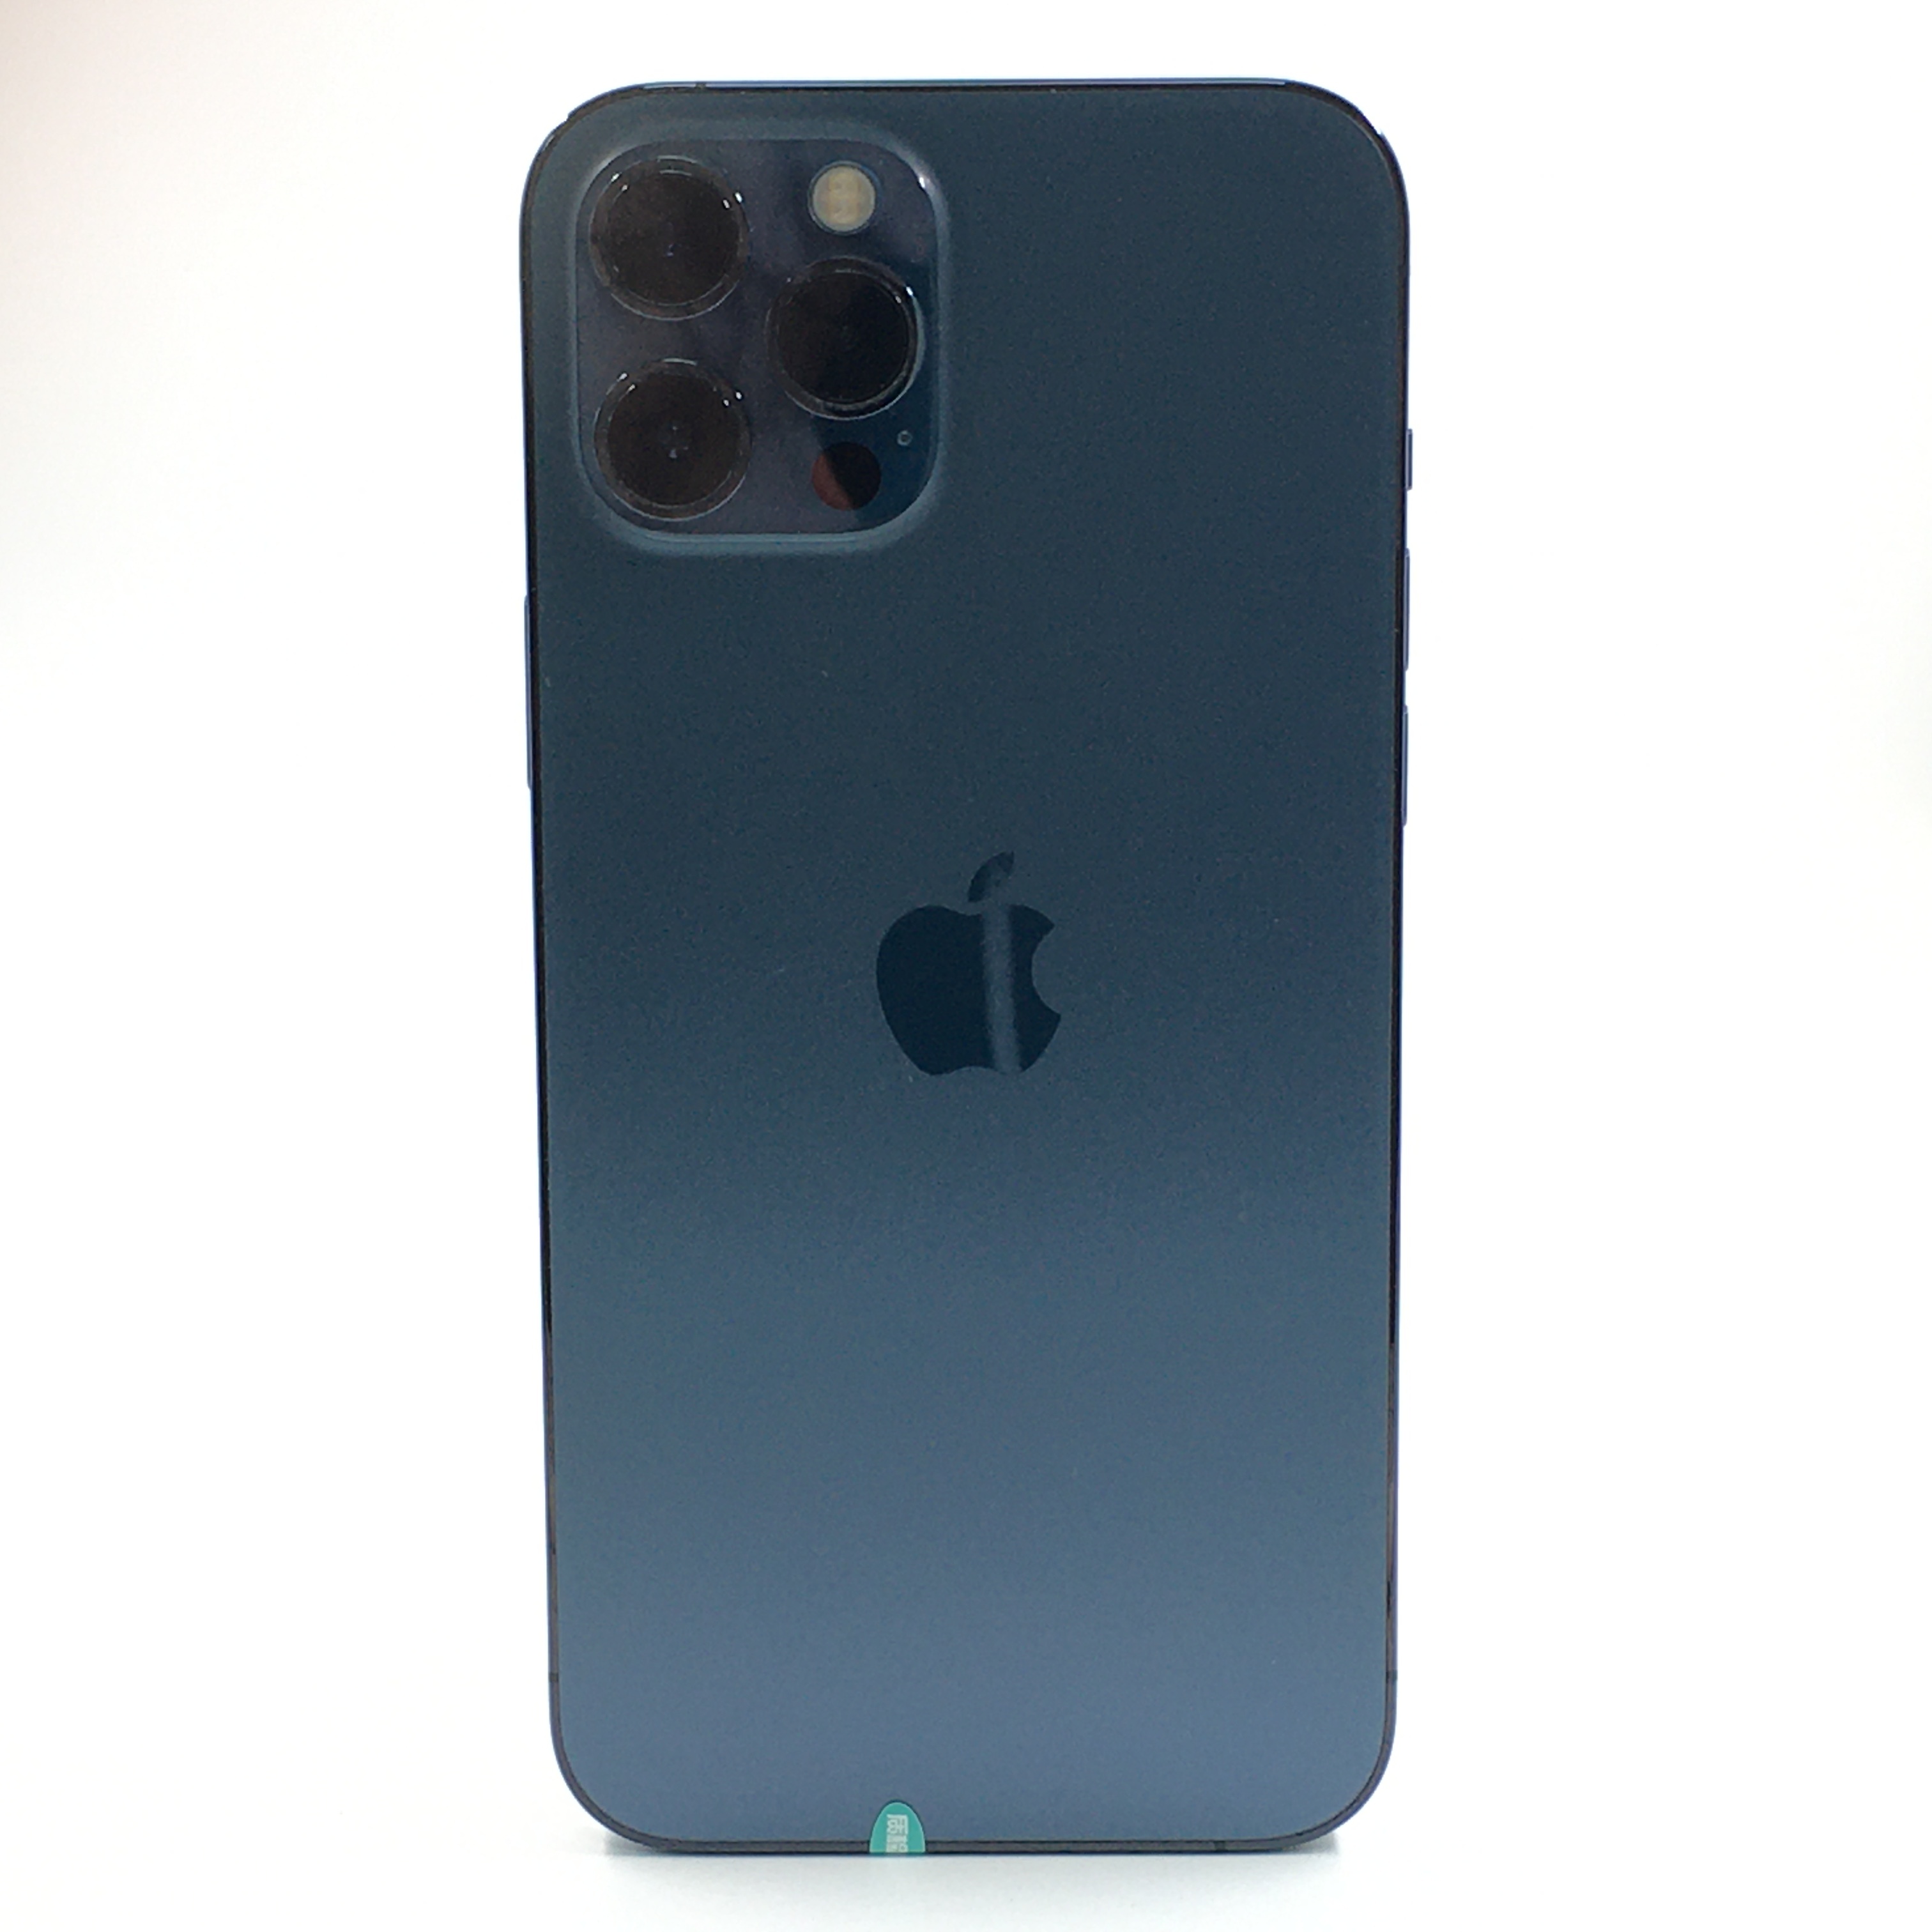 苹果【iPhone 12 Pro Max】5G全网通 海蓝色 256G 国行 95新 256G 真机实拍